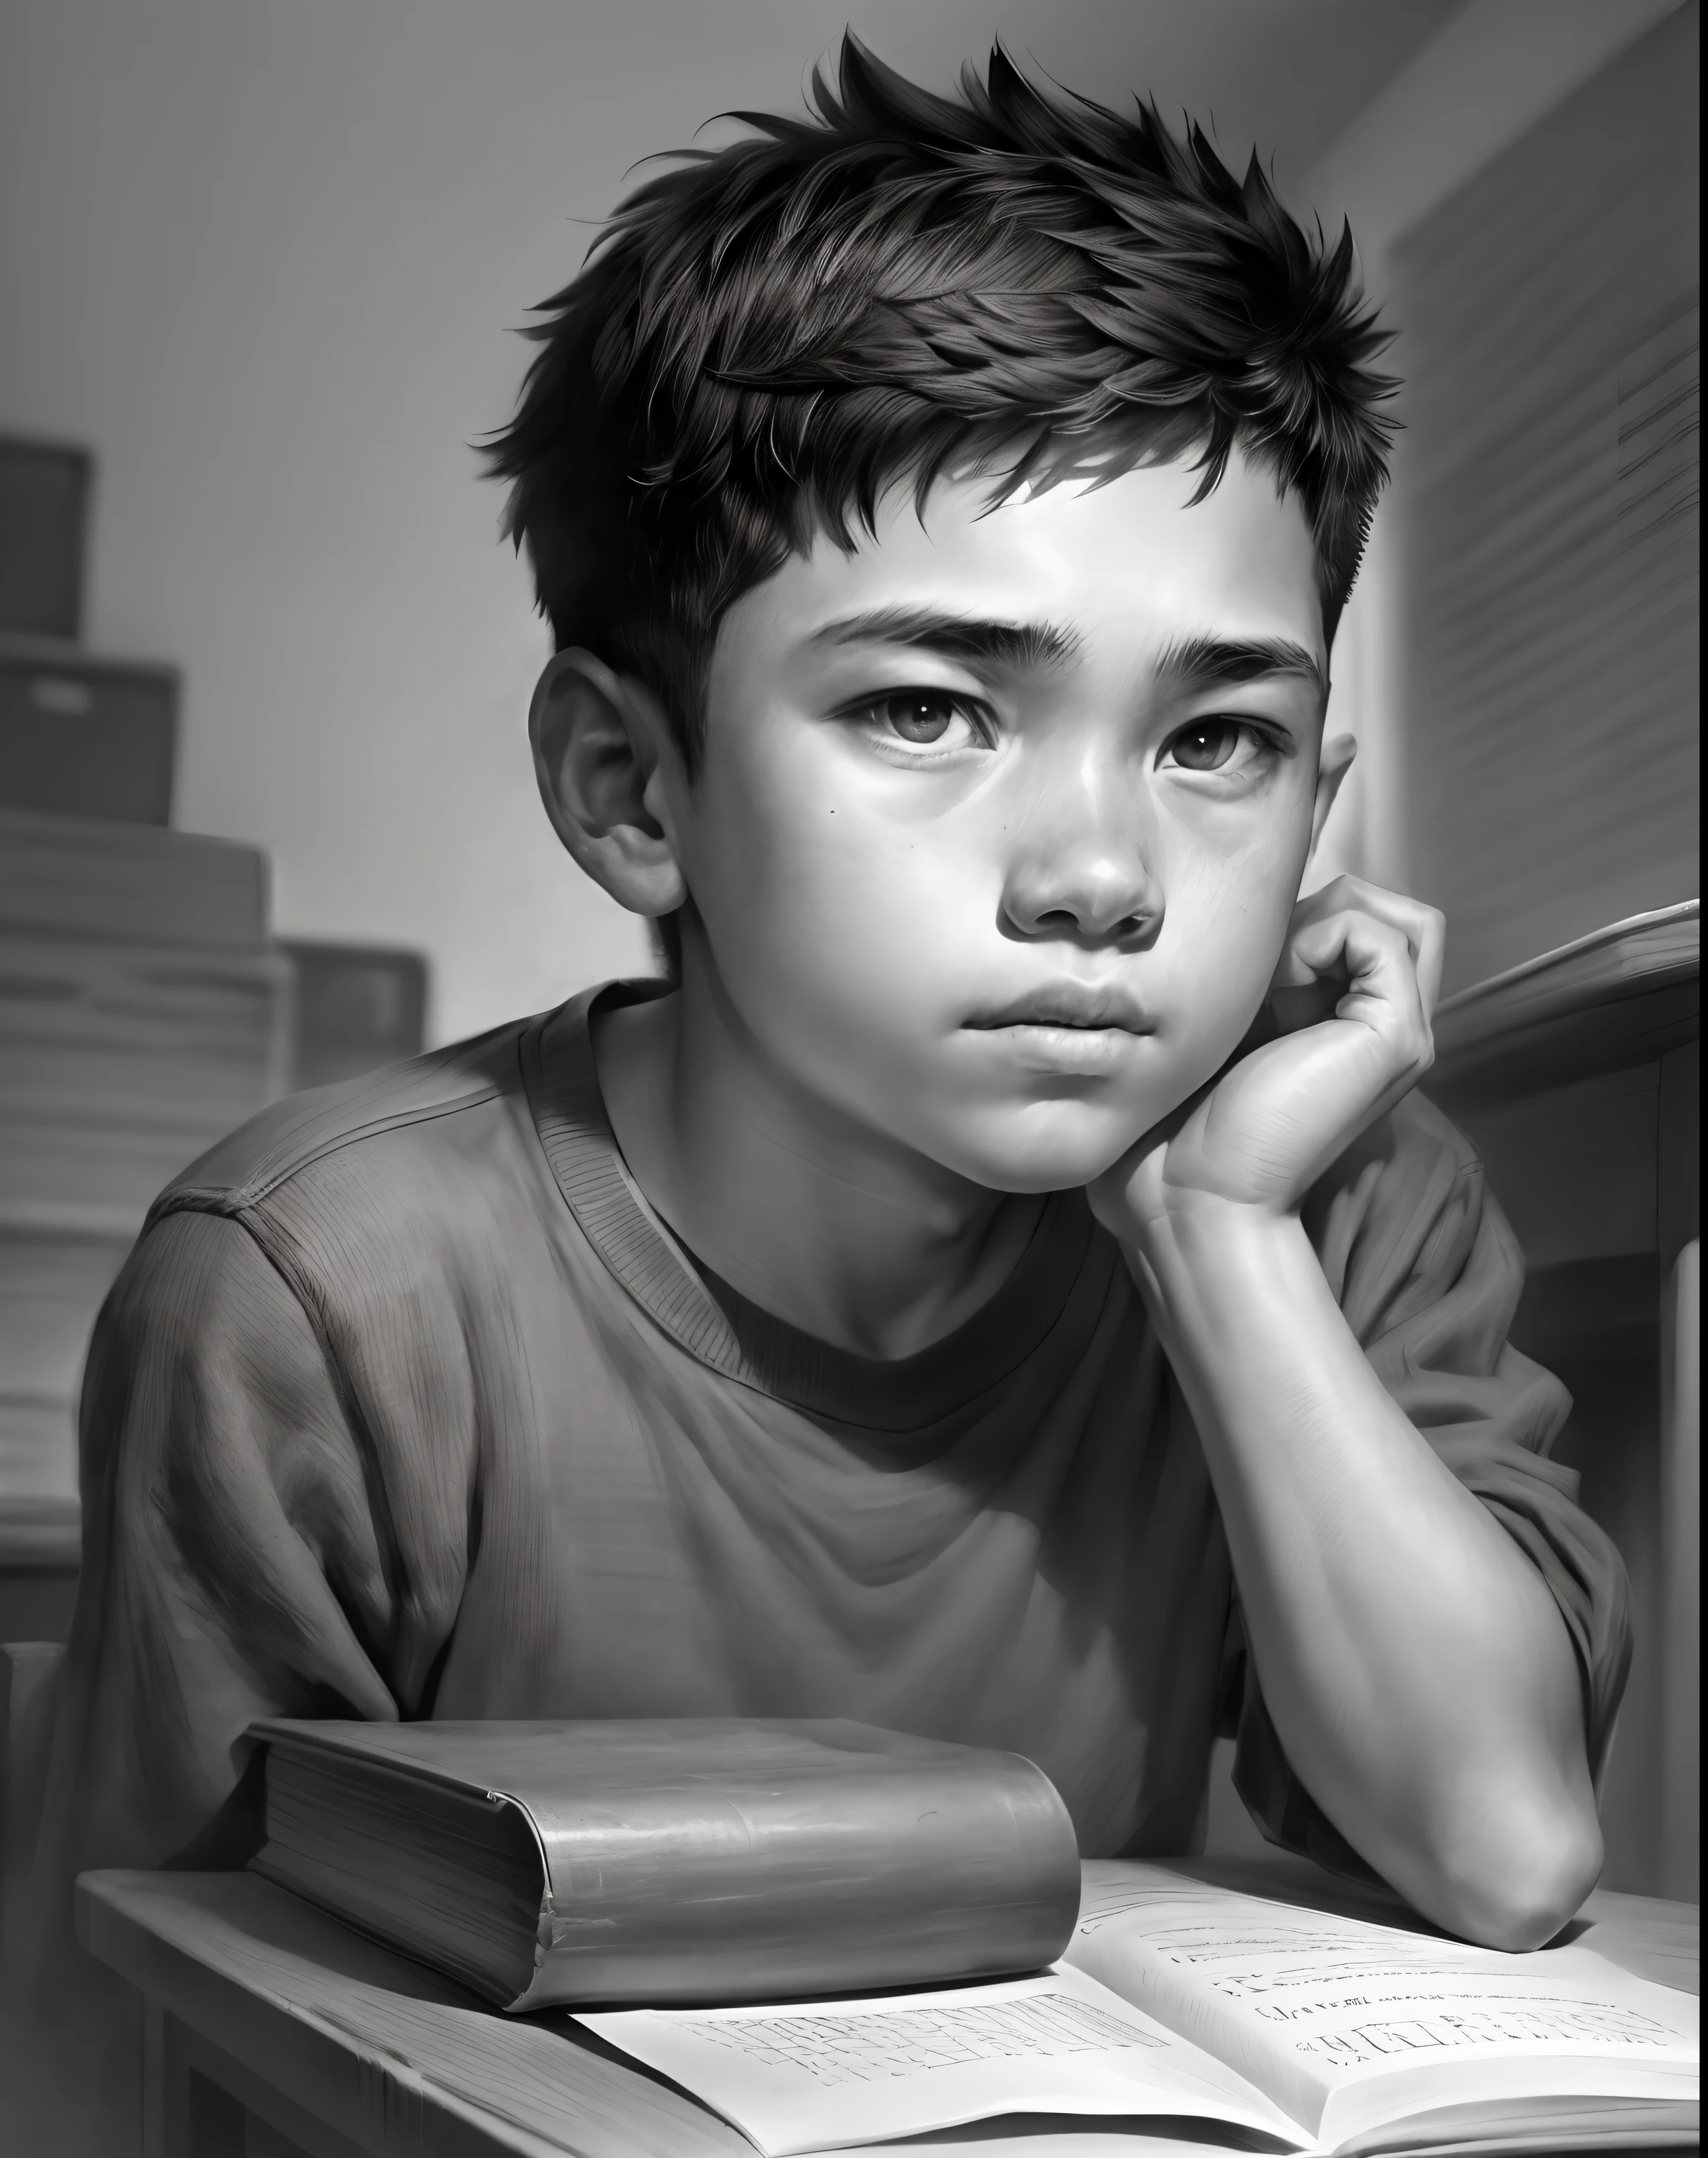 Um menino de 15 anos estuda em uma sala de aula, retrato em close-up, retrato de carvão, preto e branco, desenho a lápis. (melhor qualidade, Uma alta resolução, ultra-detalhado), iluminação de estúdio, realista, cores vivas, detalhes finos, iluminação dramática, contraste.